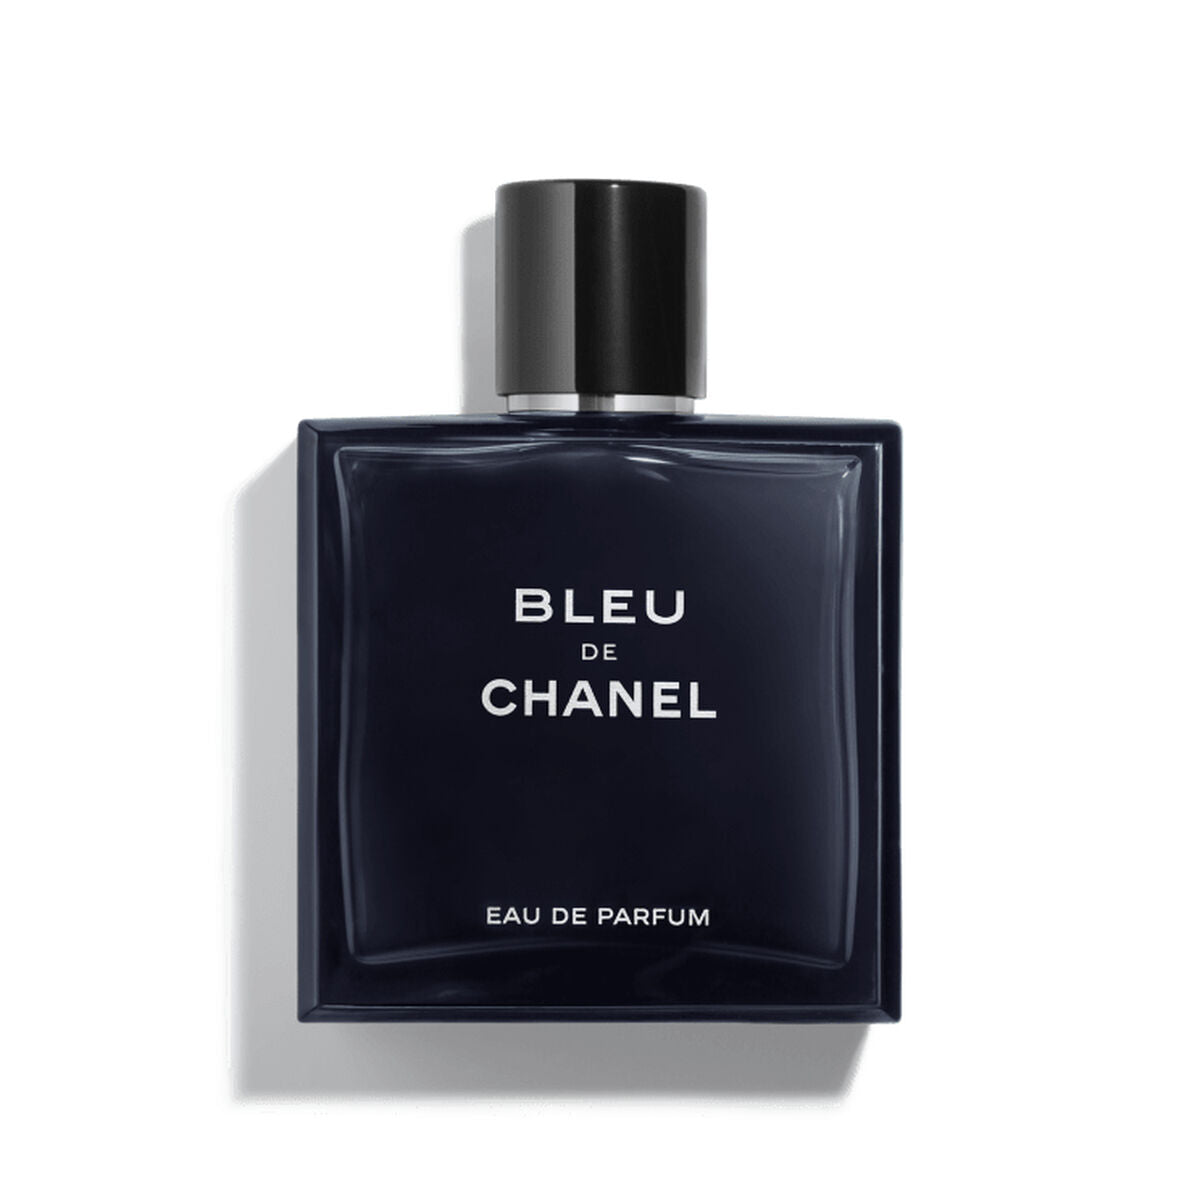 Kaufe Chanel EDP Bleu de Chanel 100 ml - Herren bei AWK Flagship um € 188.00